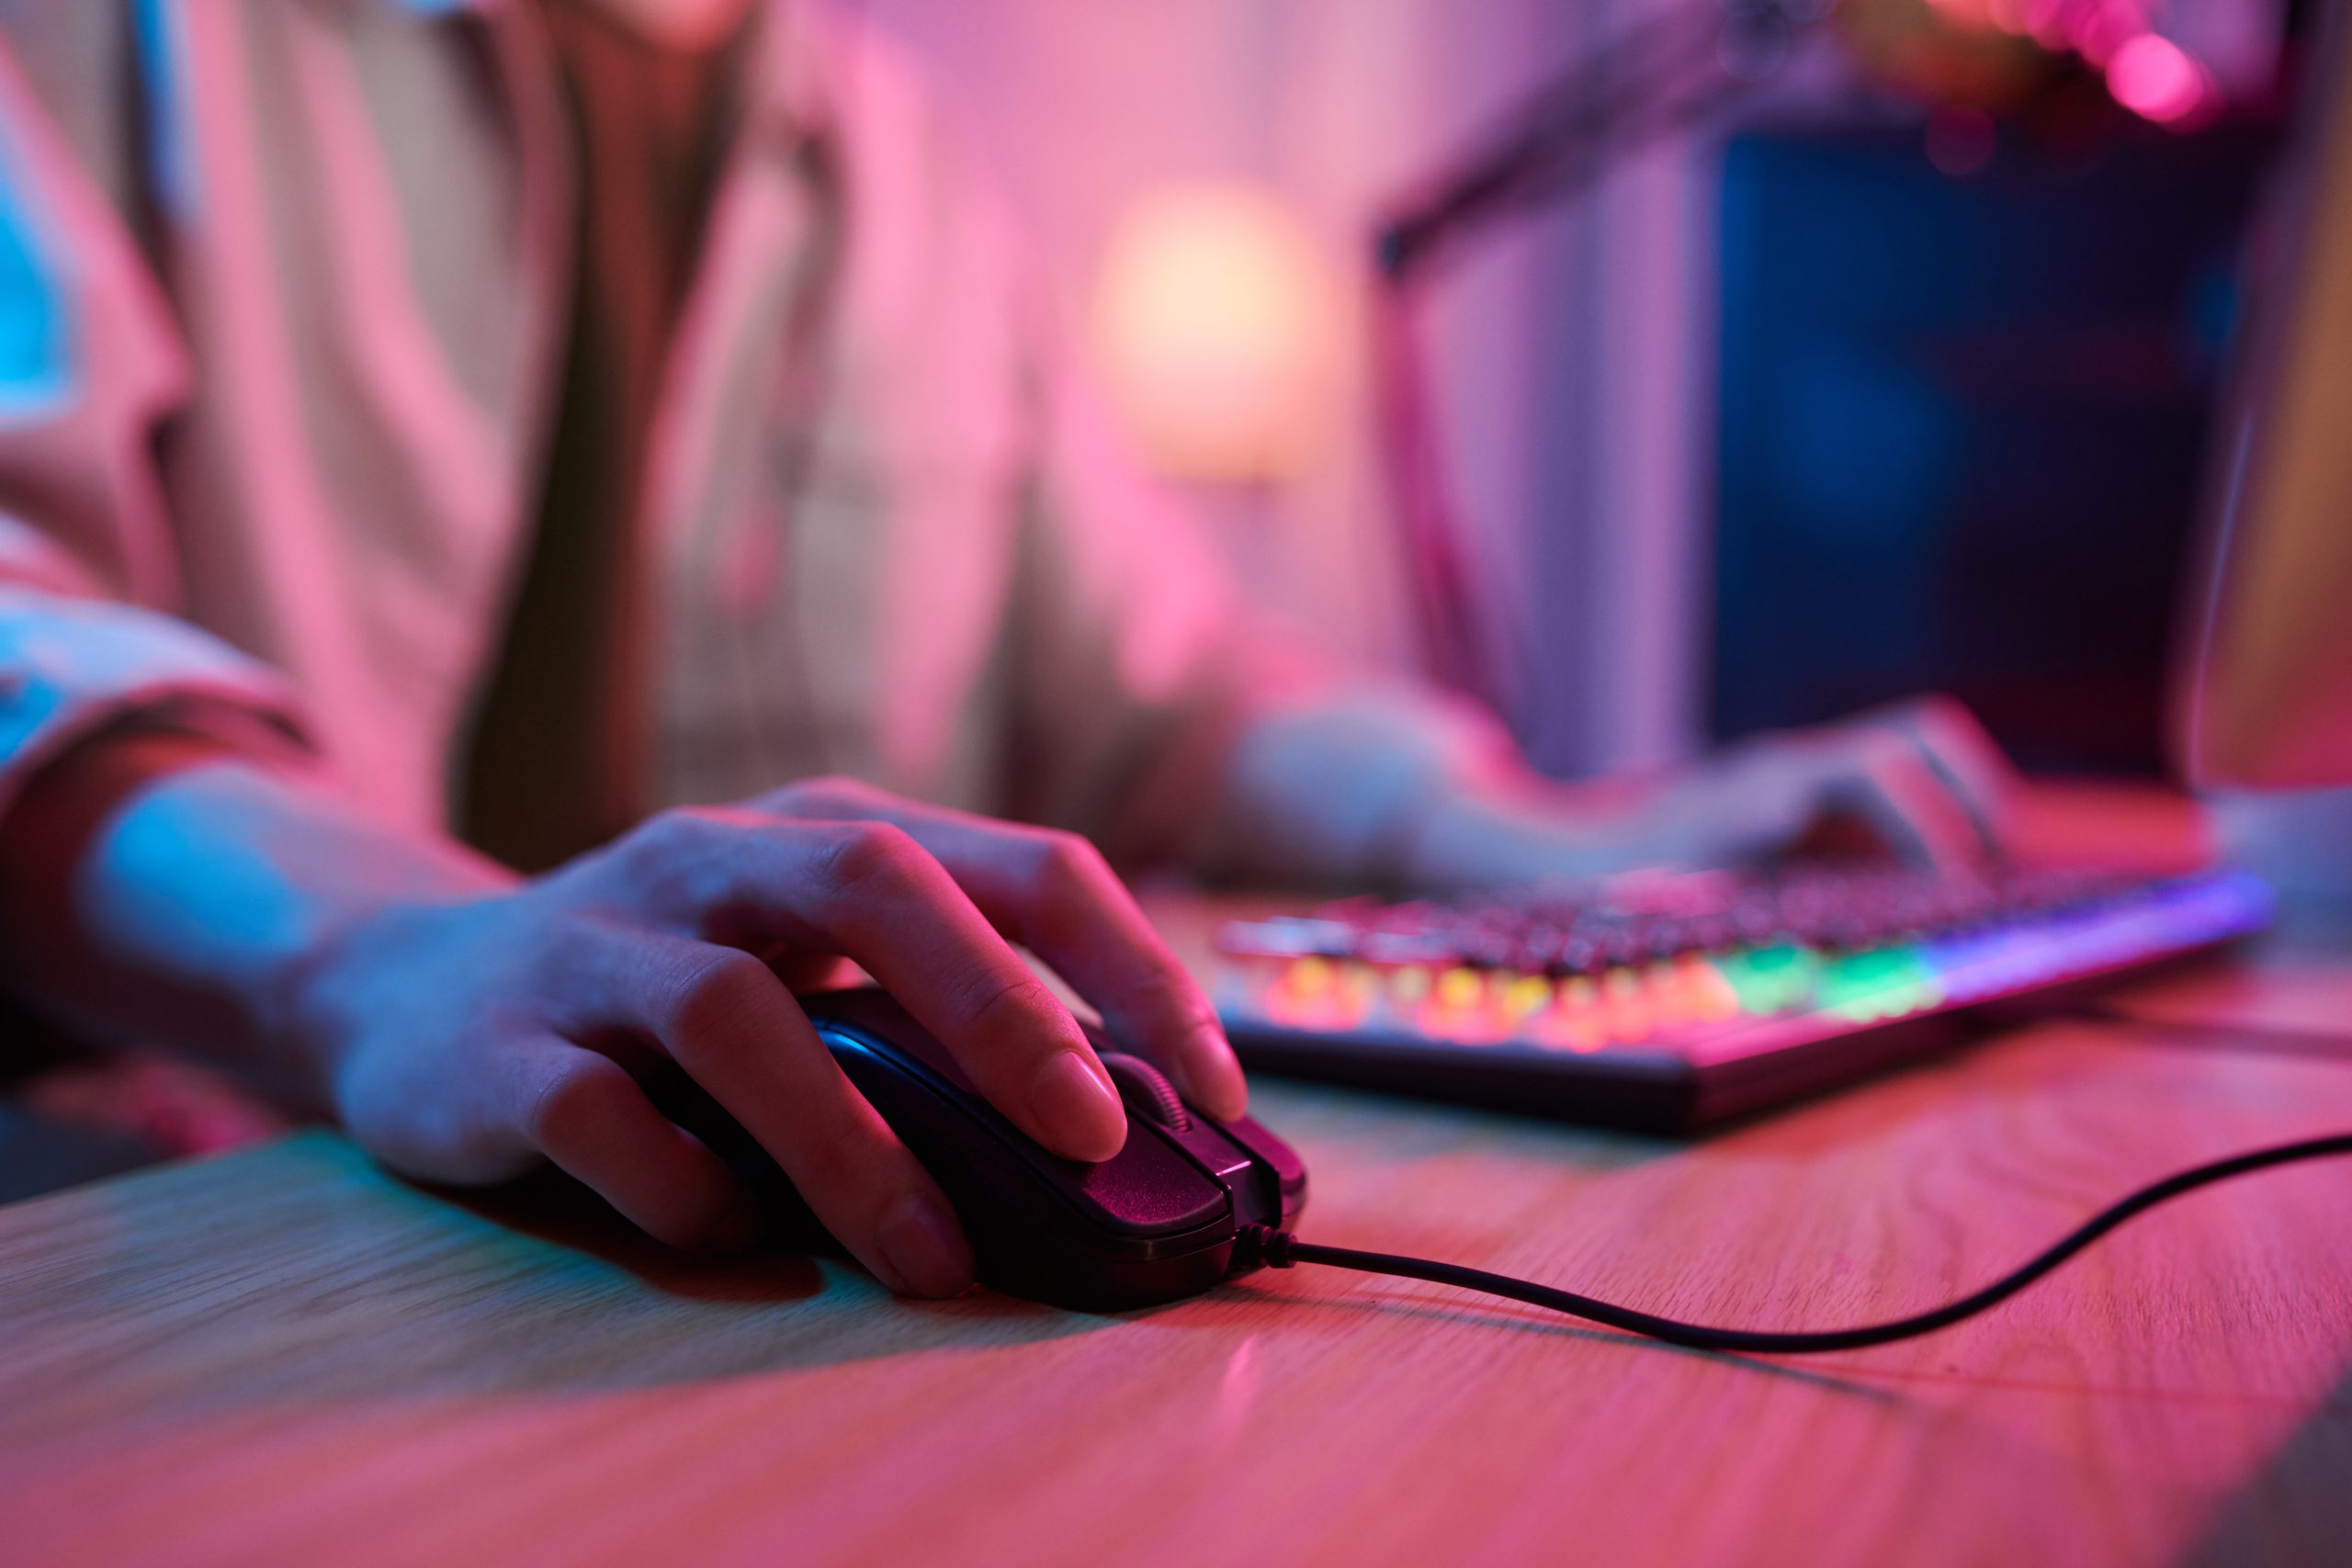 Pessoa segurando um mouse, com uma iluminação rosa e um teclado ao fundo, simulando o uso do computador.